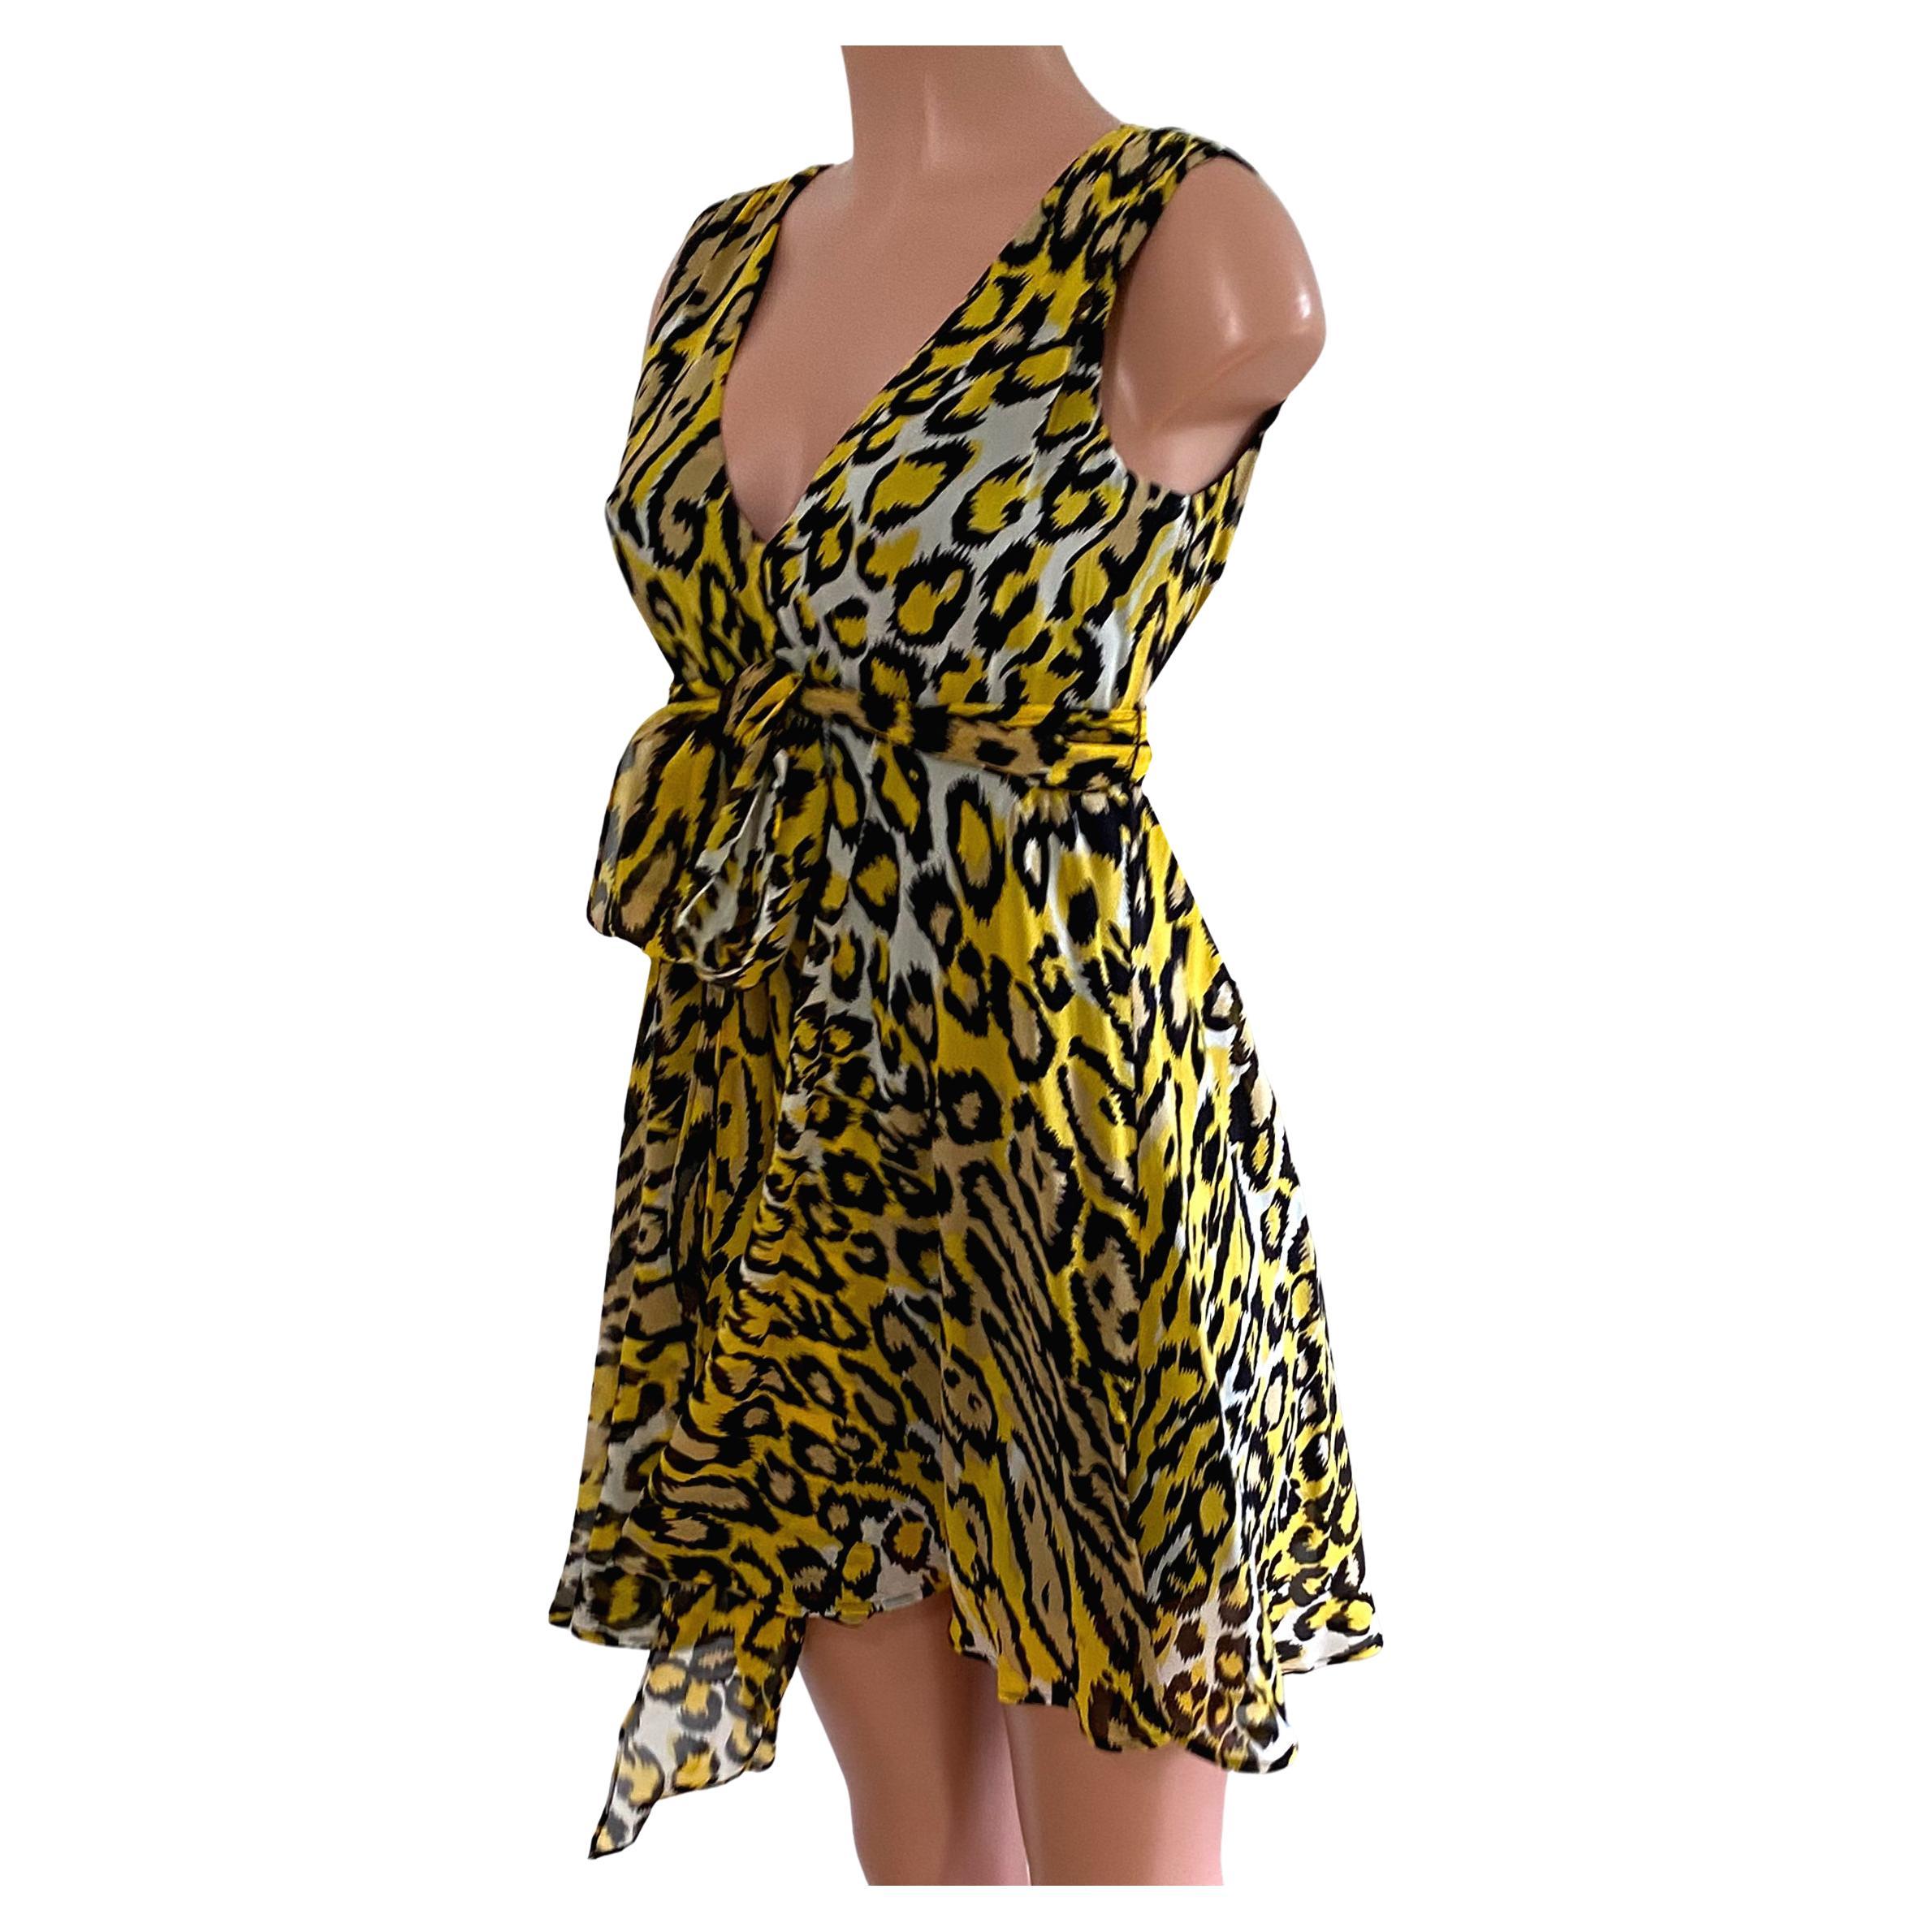 yellow cheetah dress